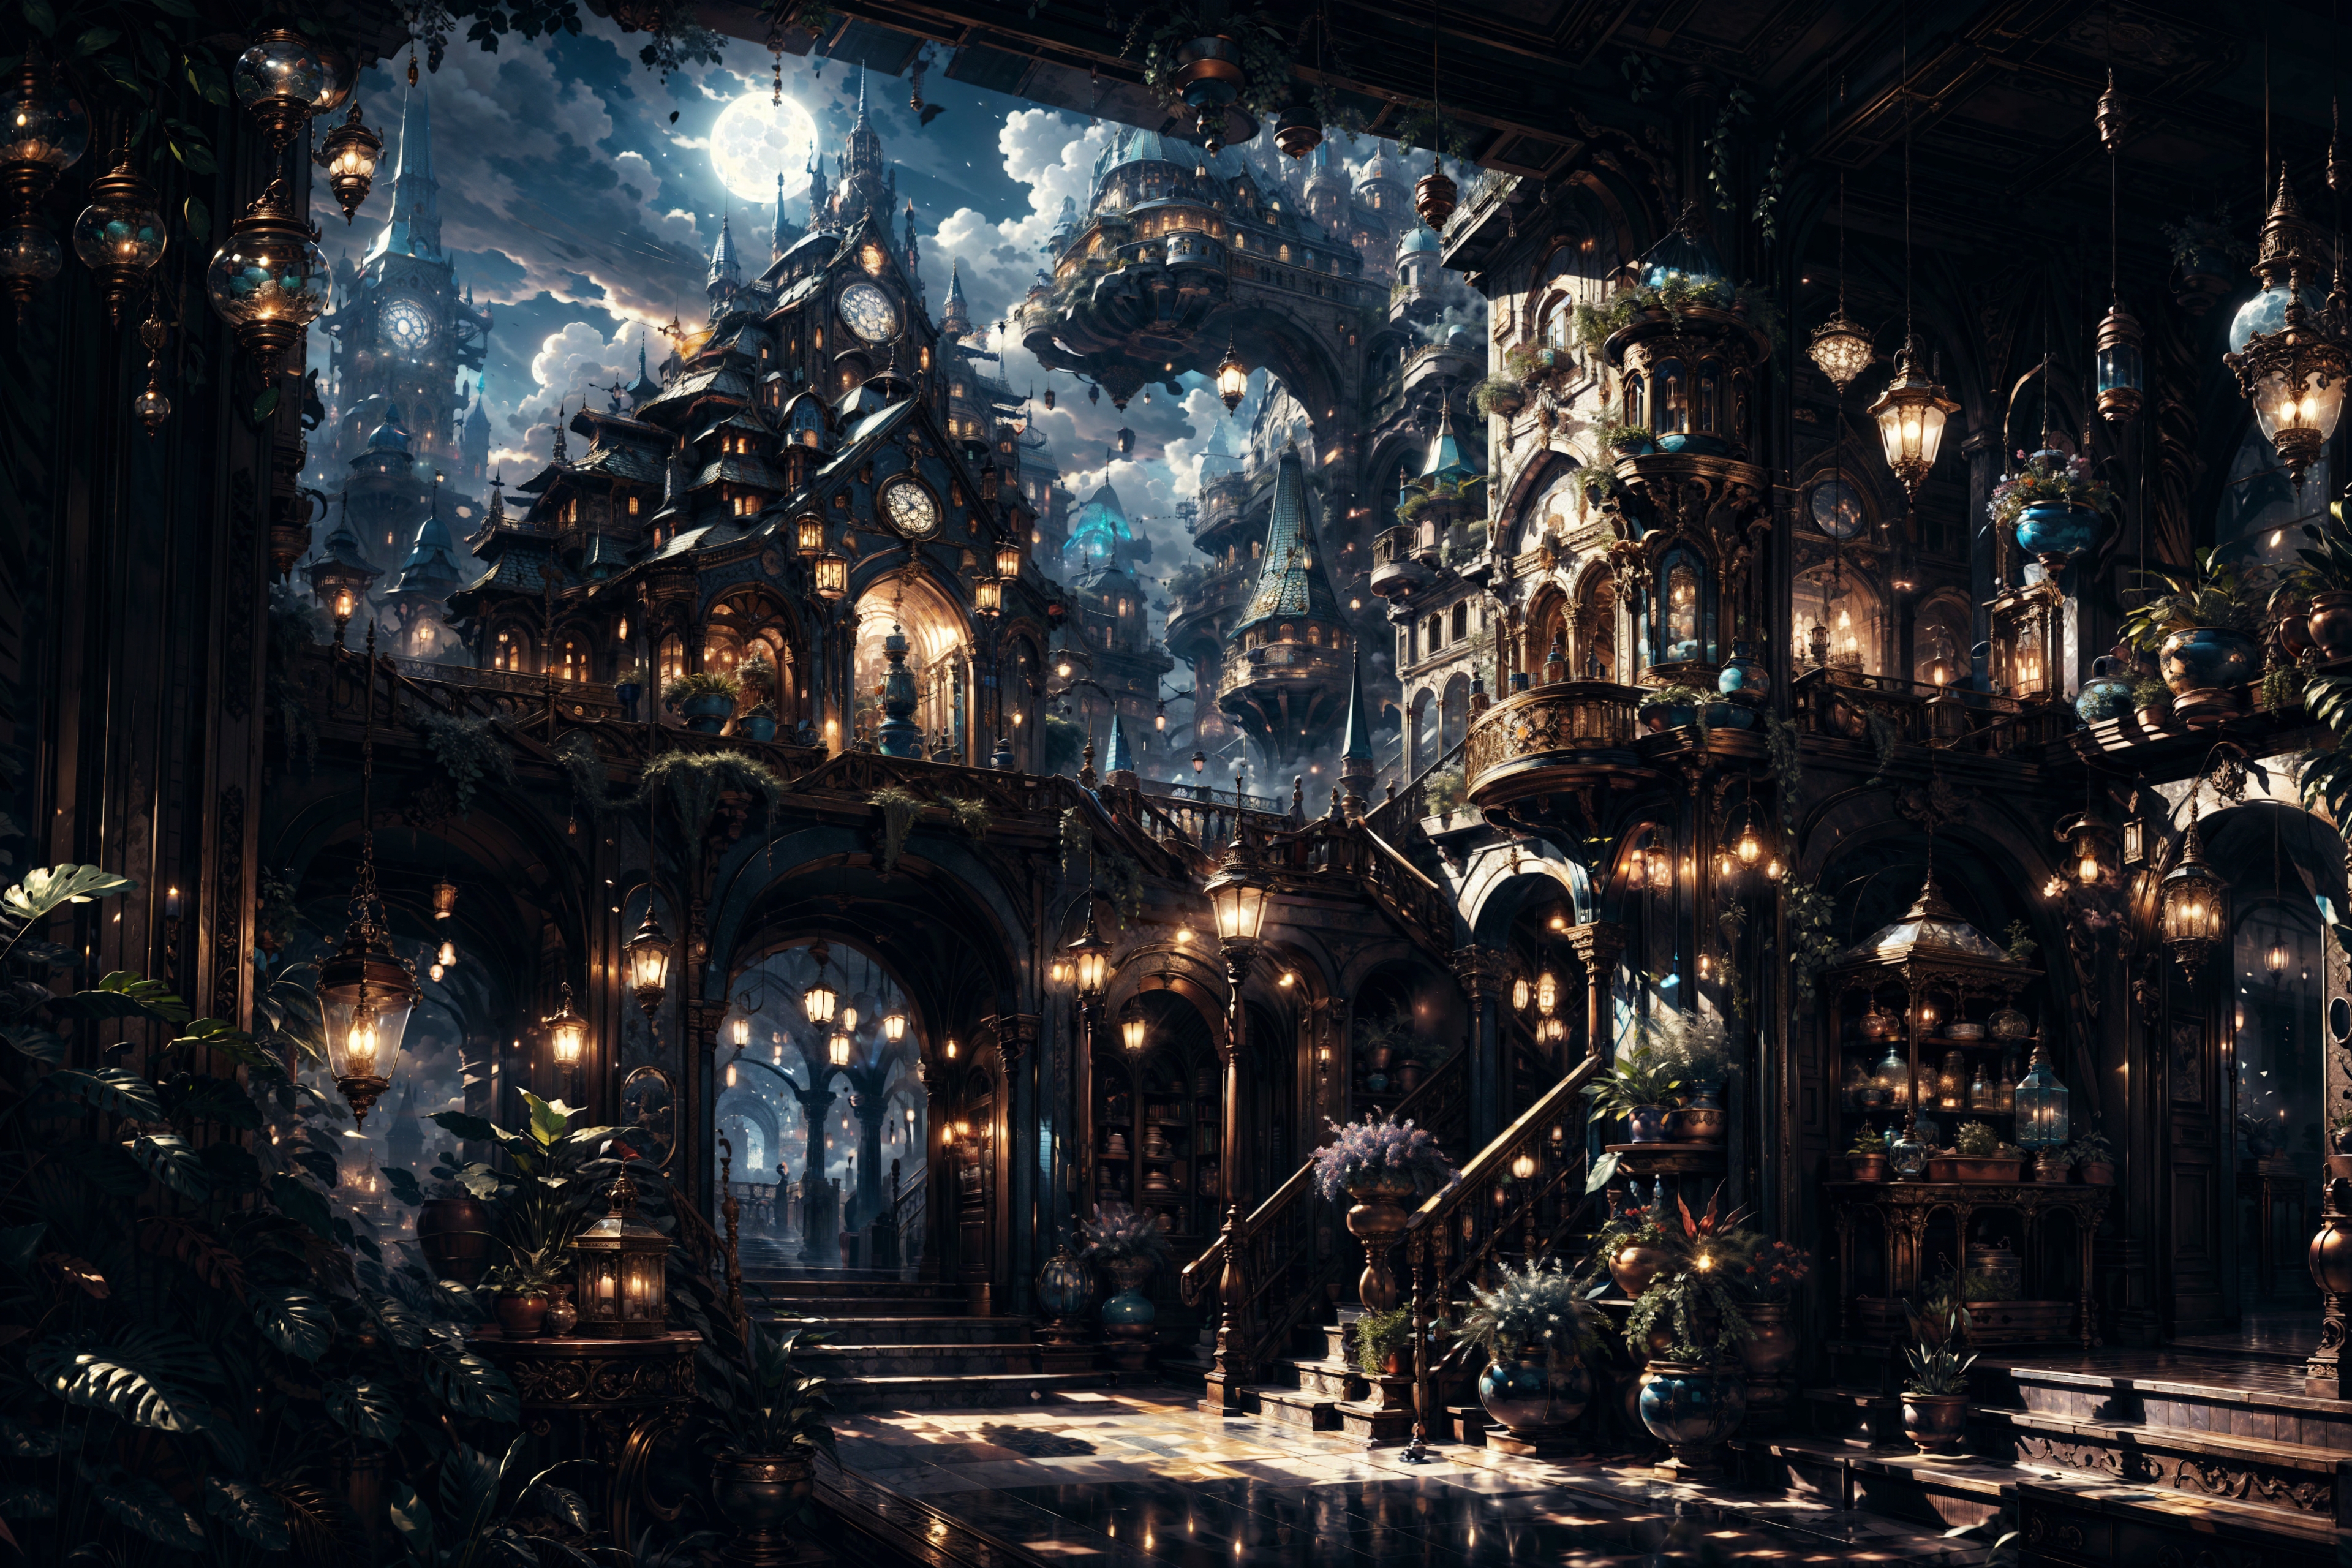 华灯初上/Night scene/fantasy city Lora image by f796